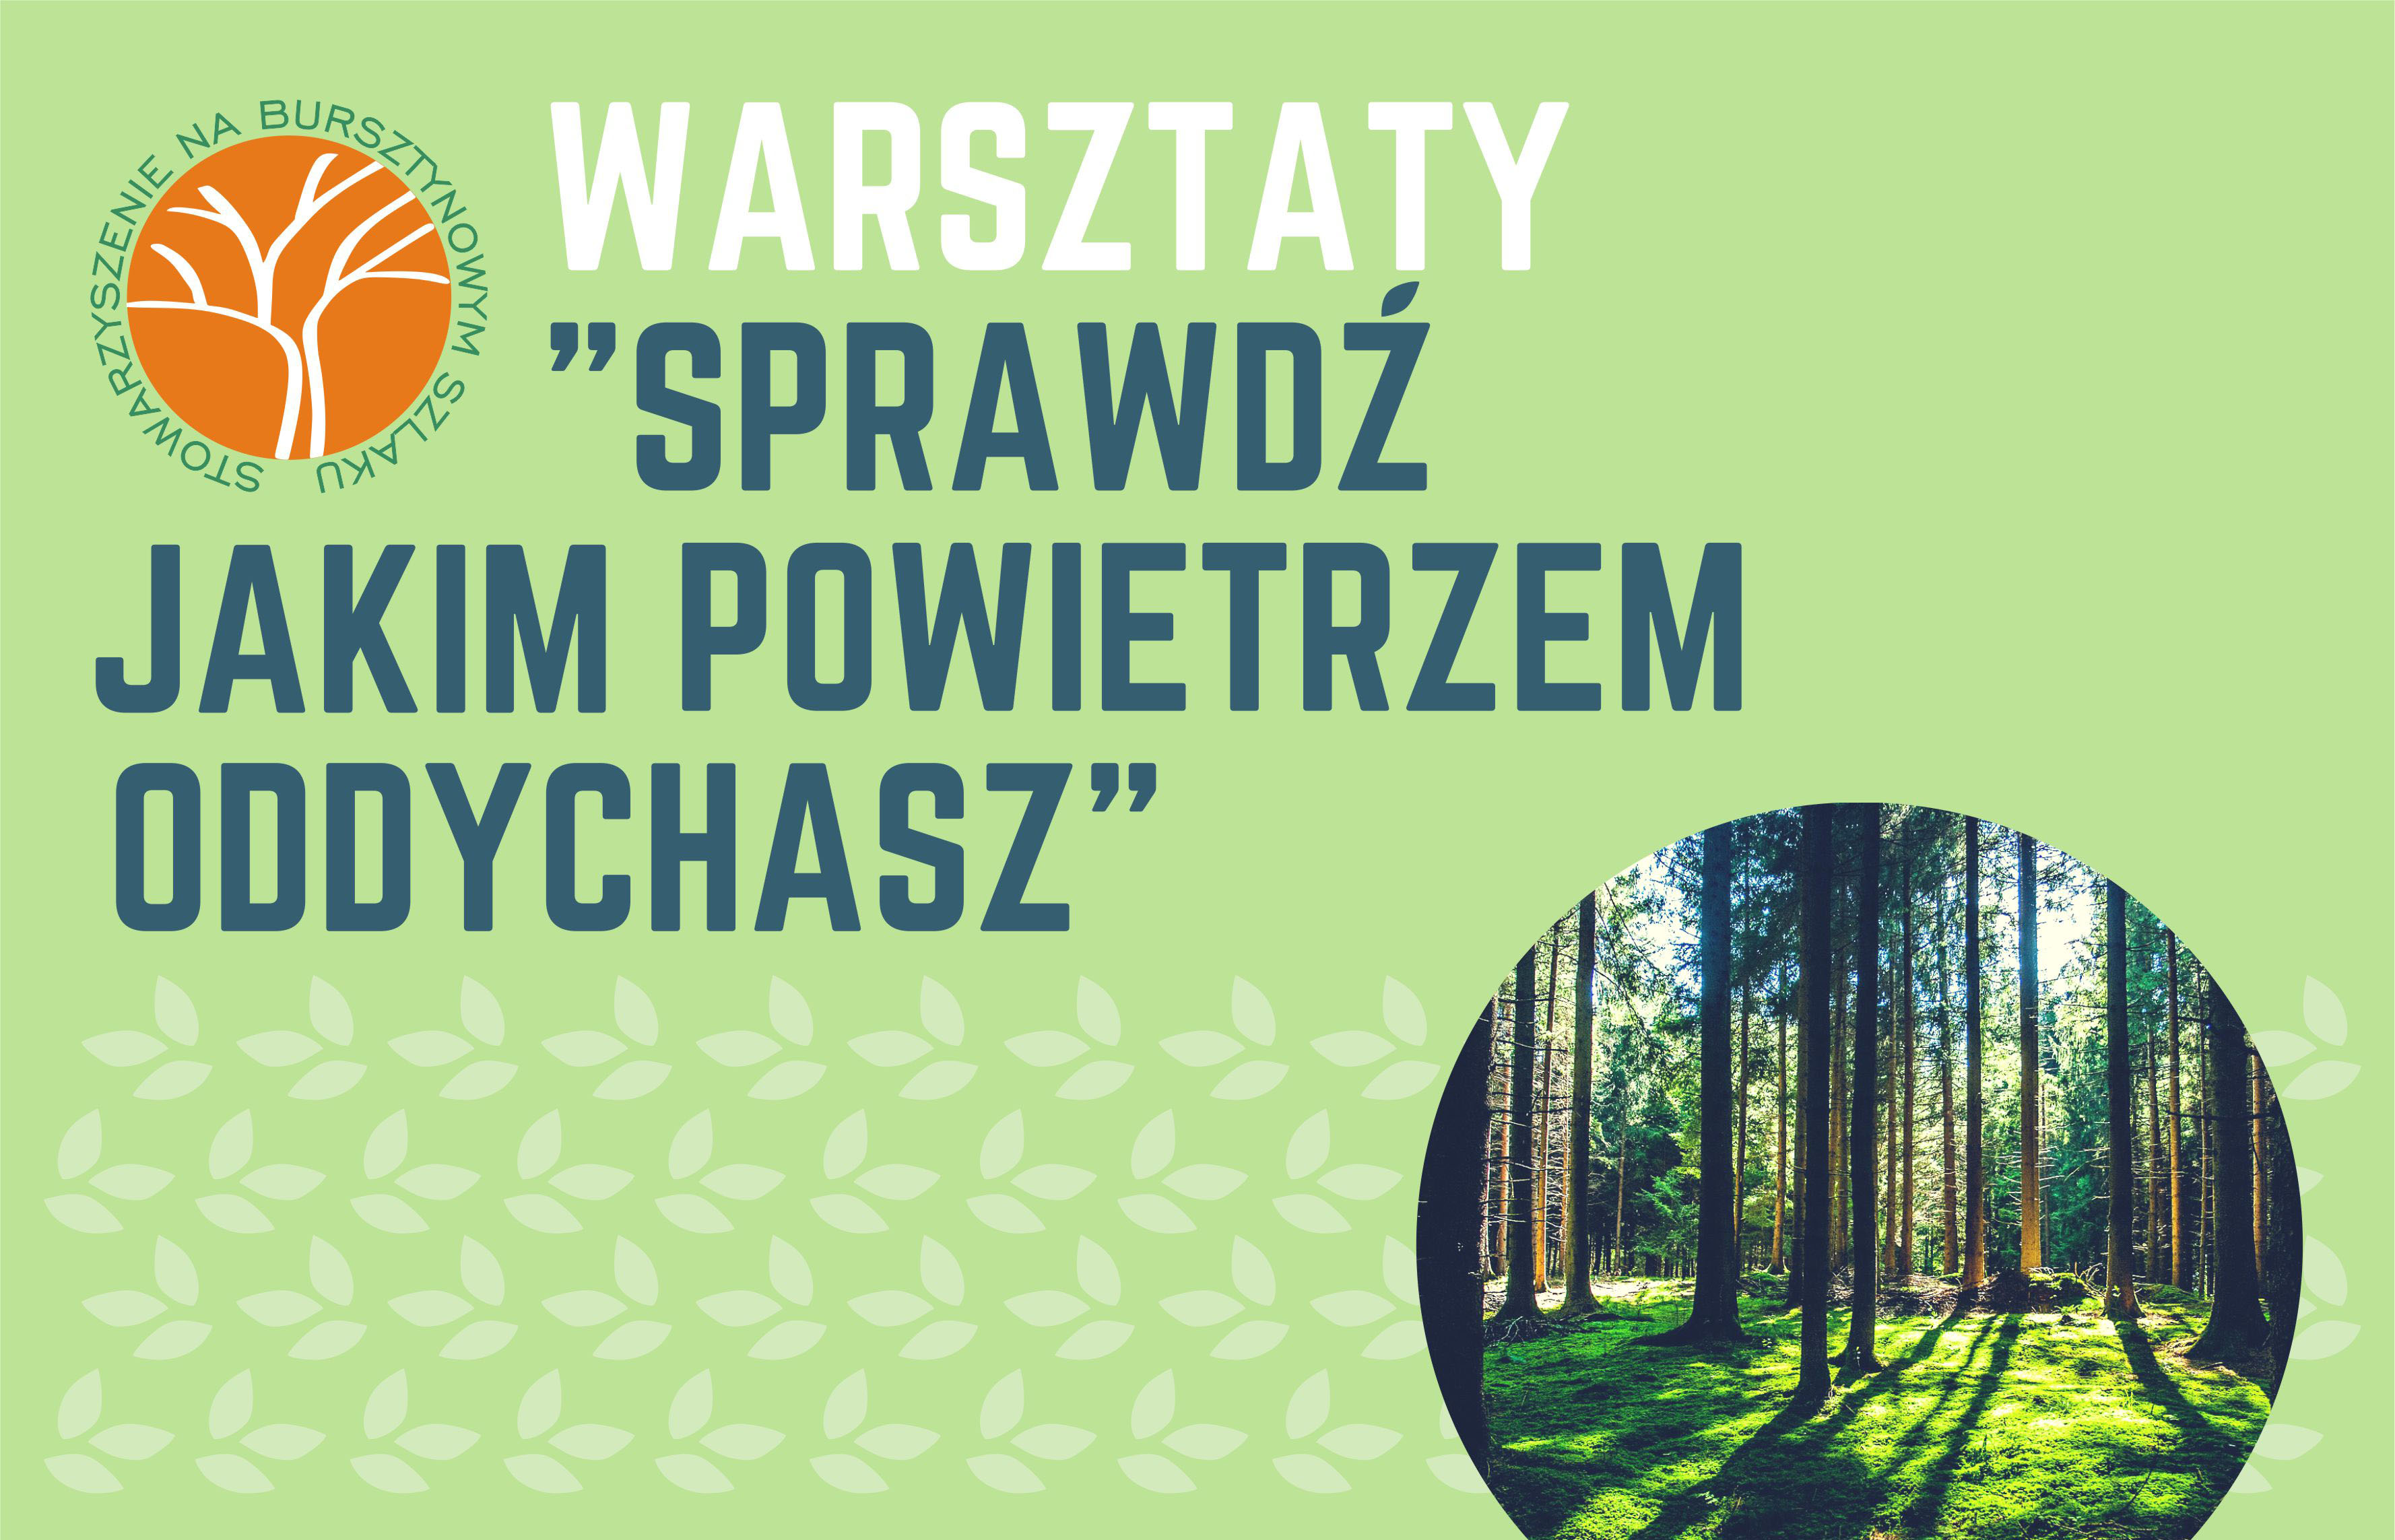 Warsztaty „Sprawdź jakim powietrzem oddychasz” w Stanisławiu Dolnym